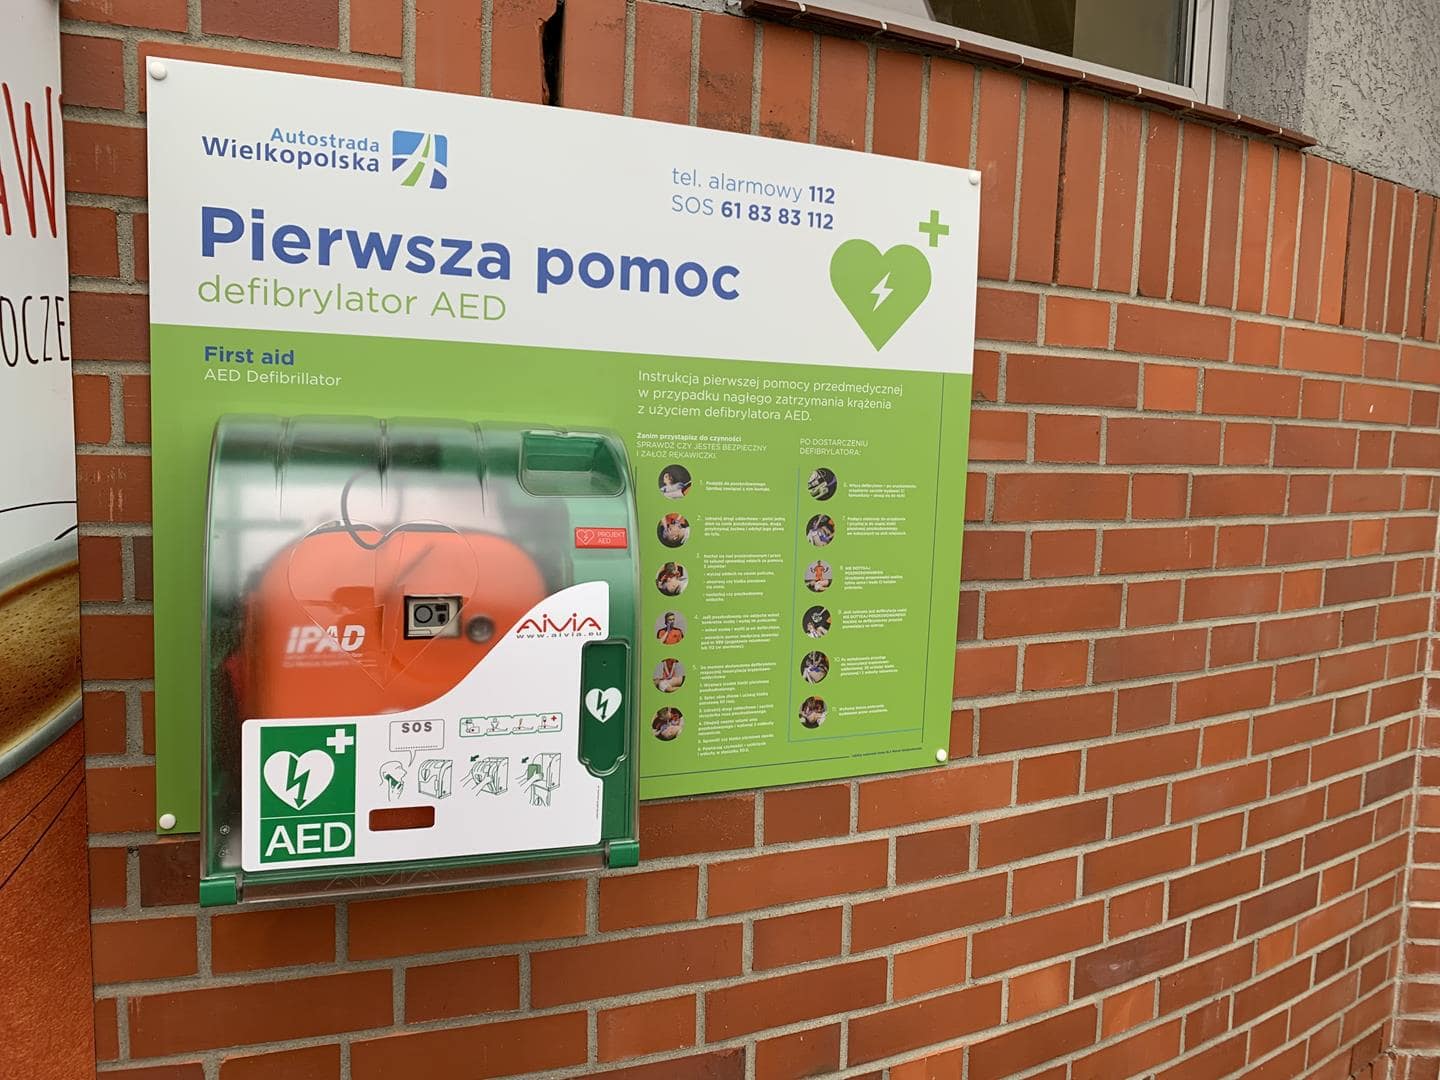 Defibrylatory AED wzdłuż całej Autostrady Wielkopolskiej